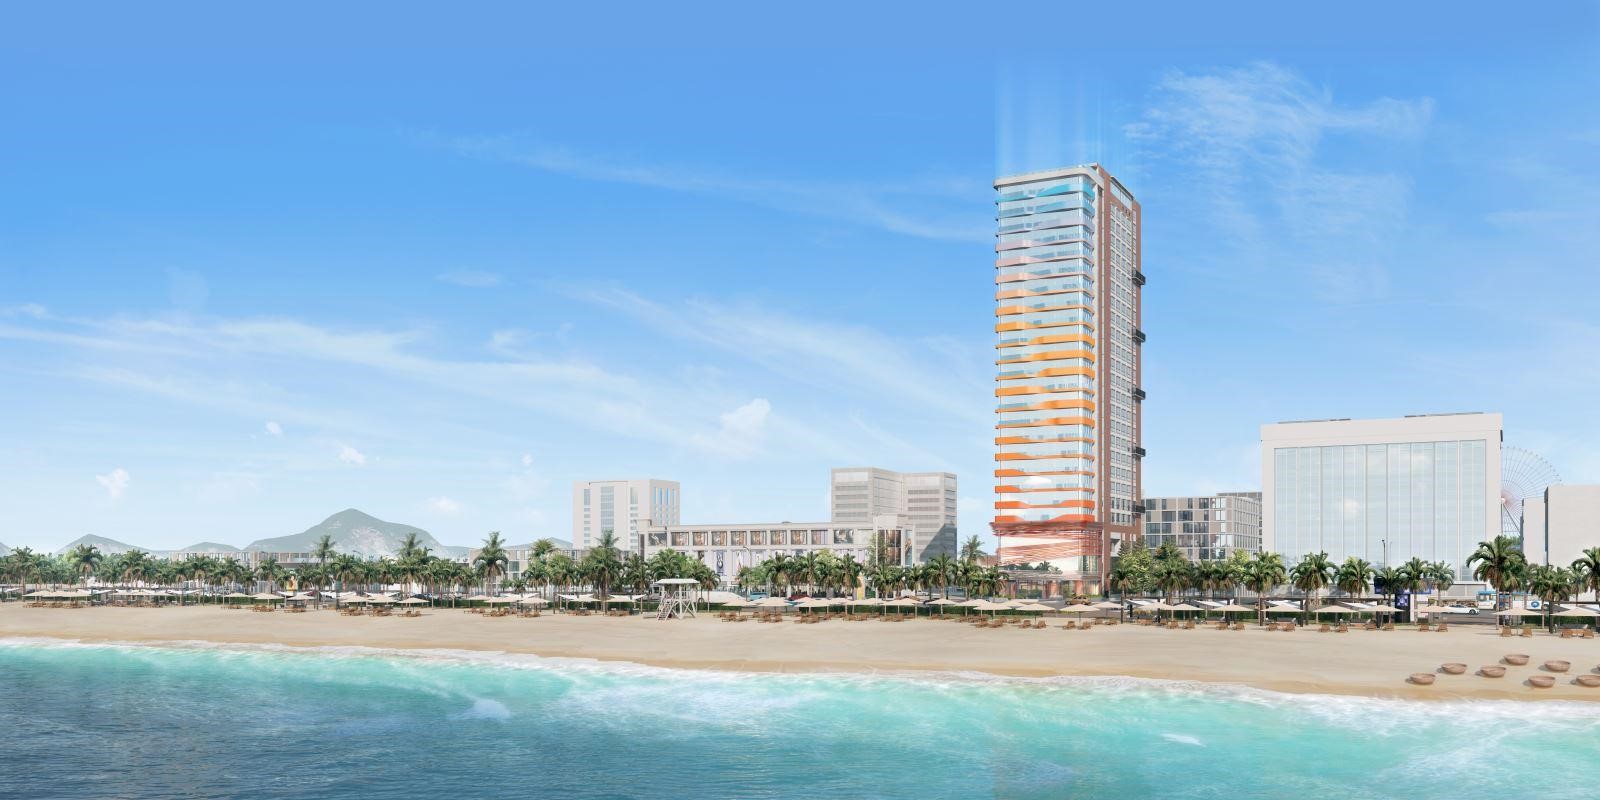 Felicia OceanView Apart-Hotel là dự án căn hộ khách sạn theo mô hình Co-living và Co-working đầu tiên tại Đà Nẵng.